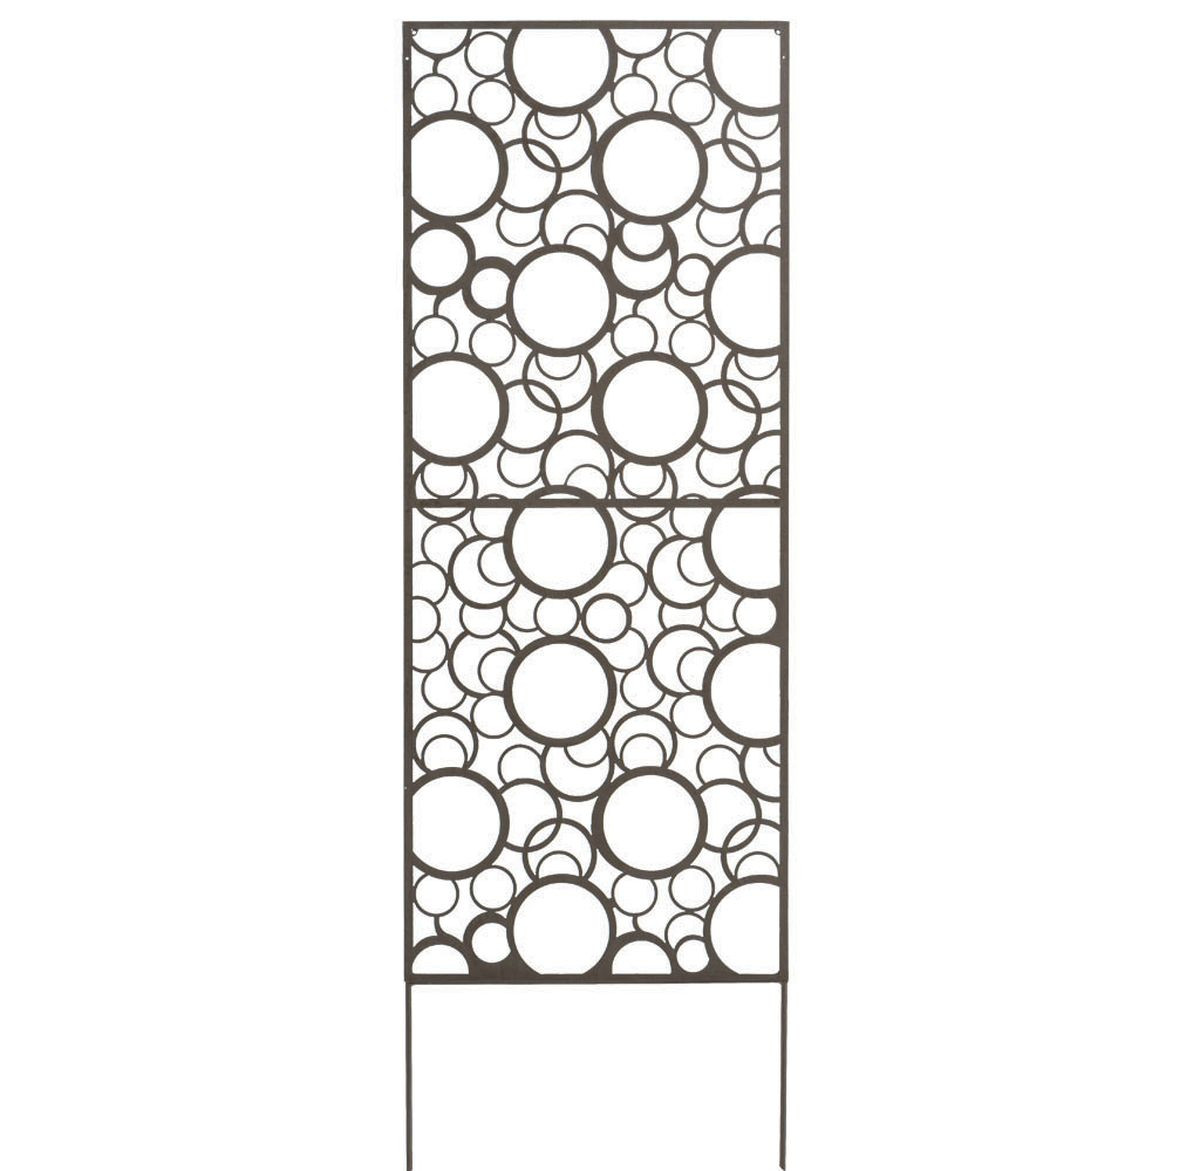 Panneau métal avec motifs décoratifs/Ronds - 0,60 x 1,50 m - Brun vieilli